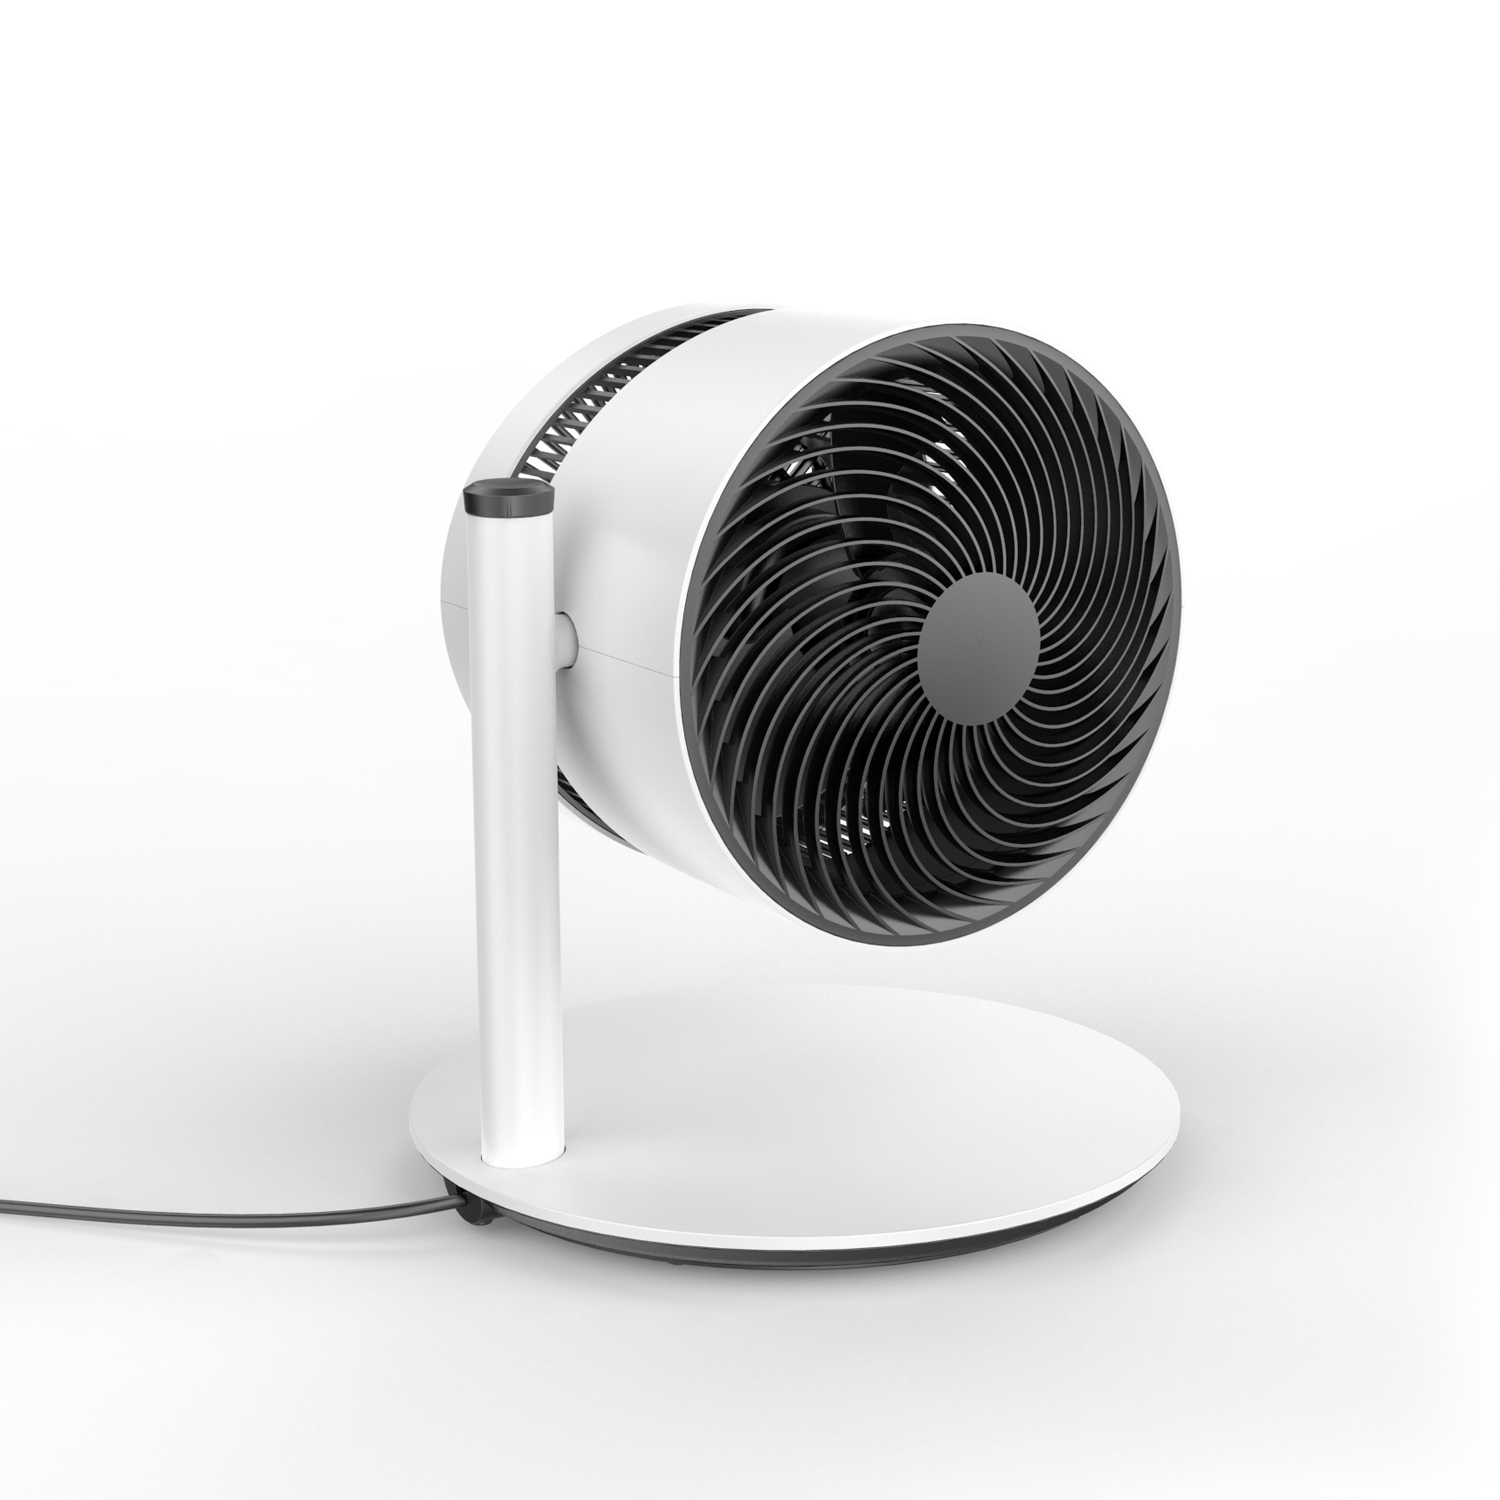 Product design innovativo per la nuova gamma di ventilatori Boneco